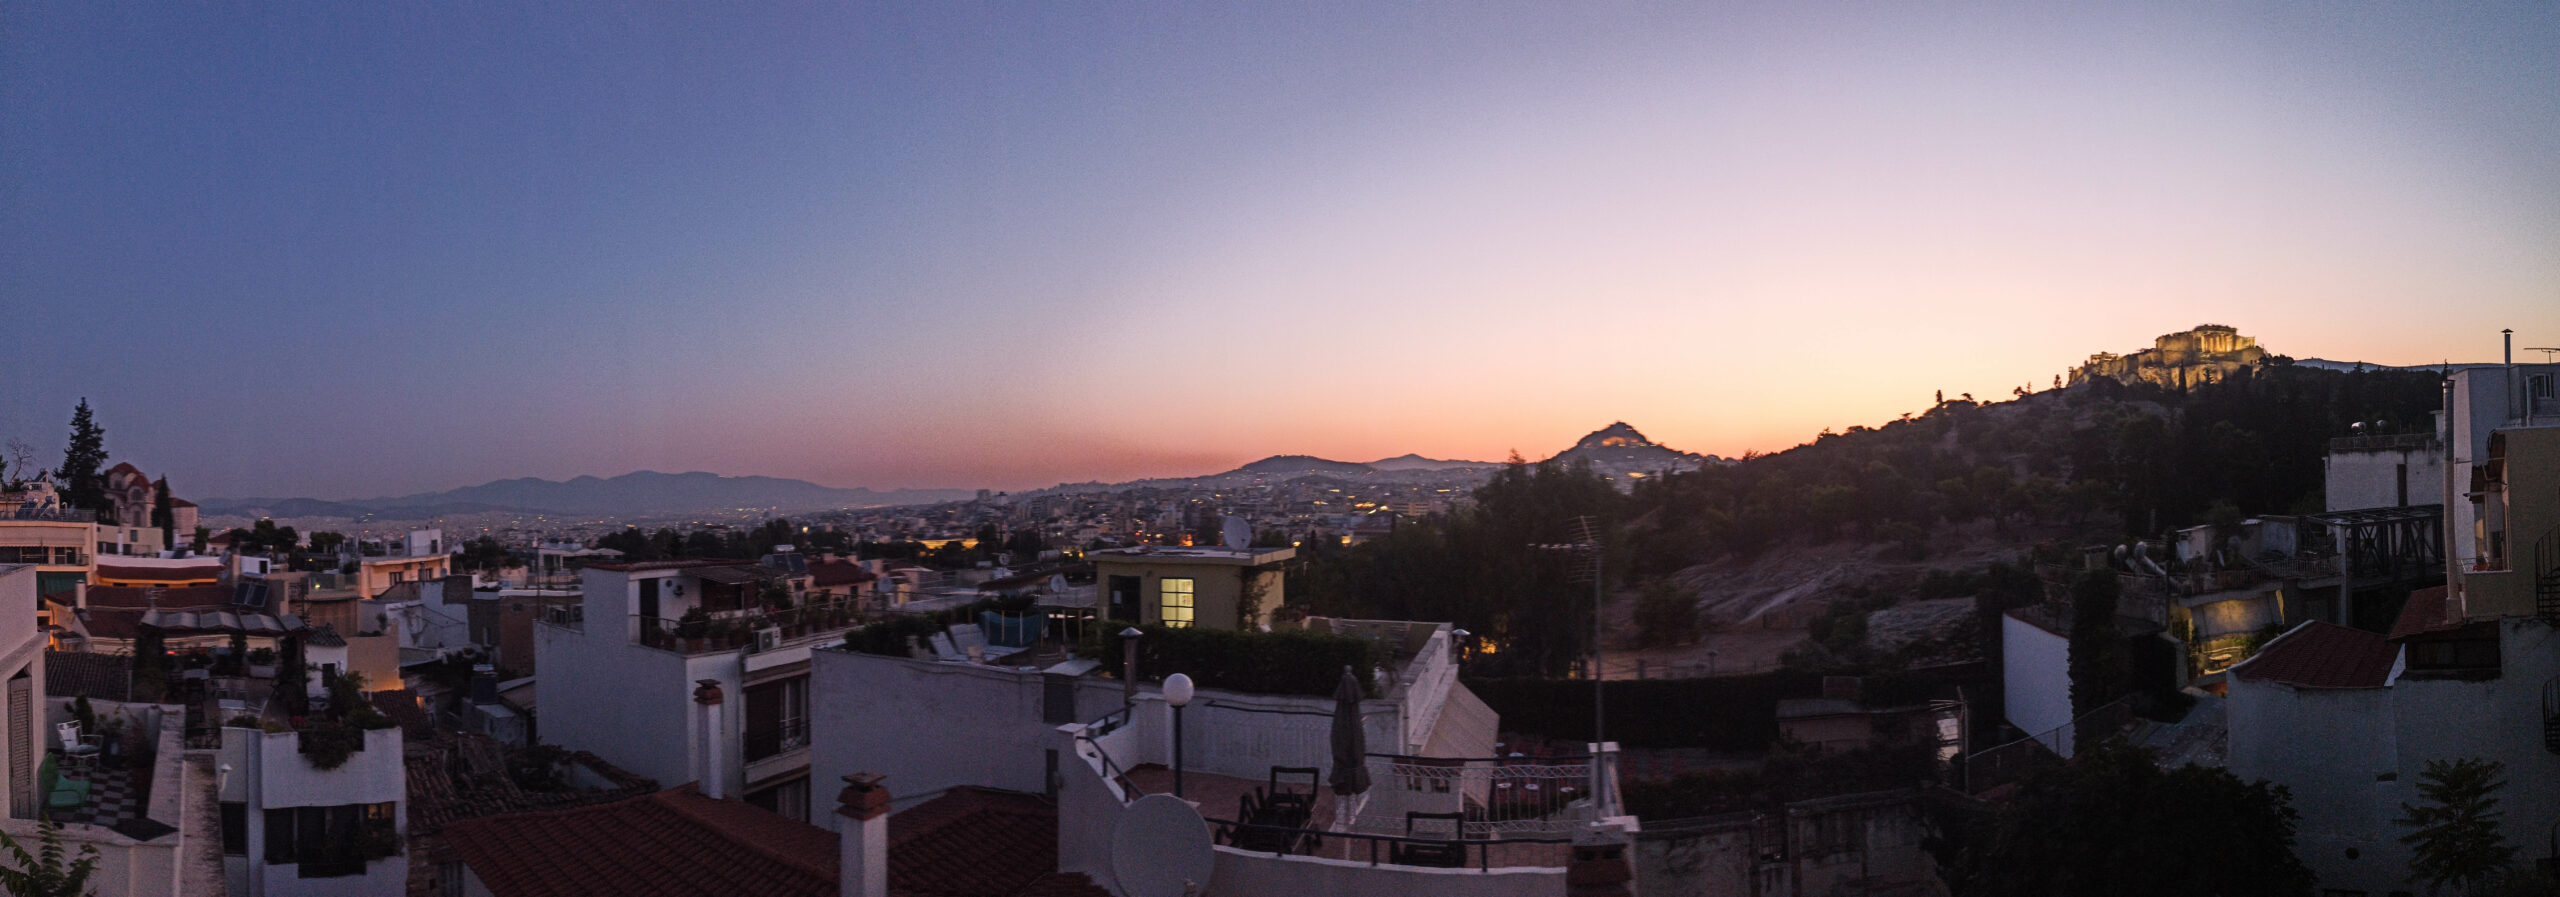 Panorama sur les toits d'Athènes avec l'acropole et les montagnes en arrière plan